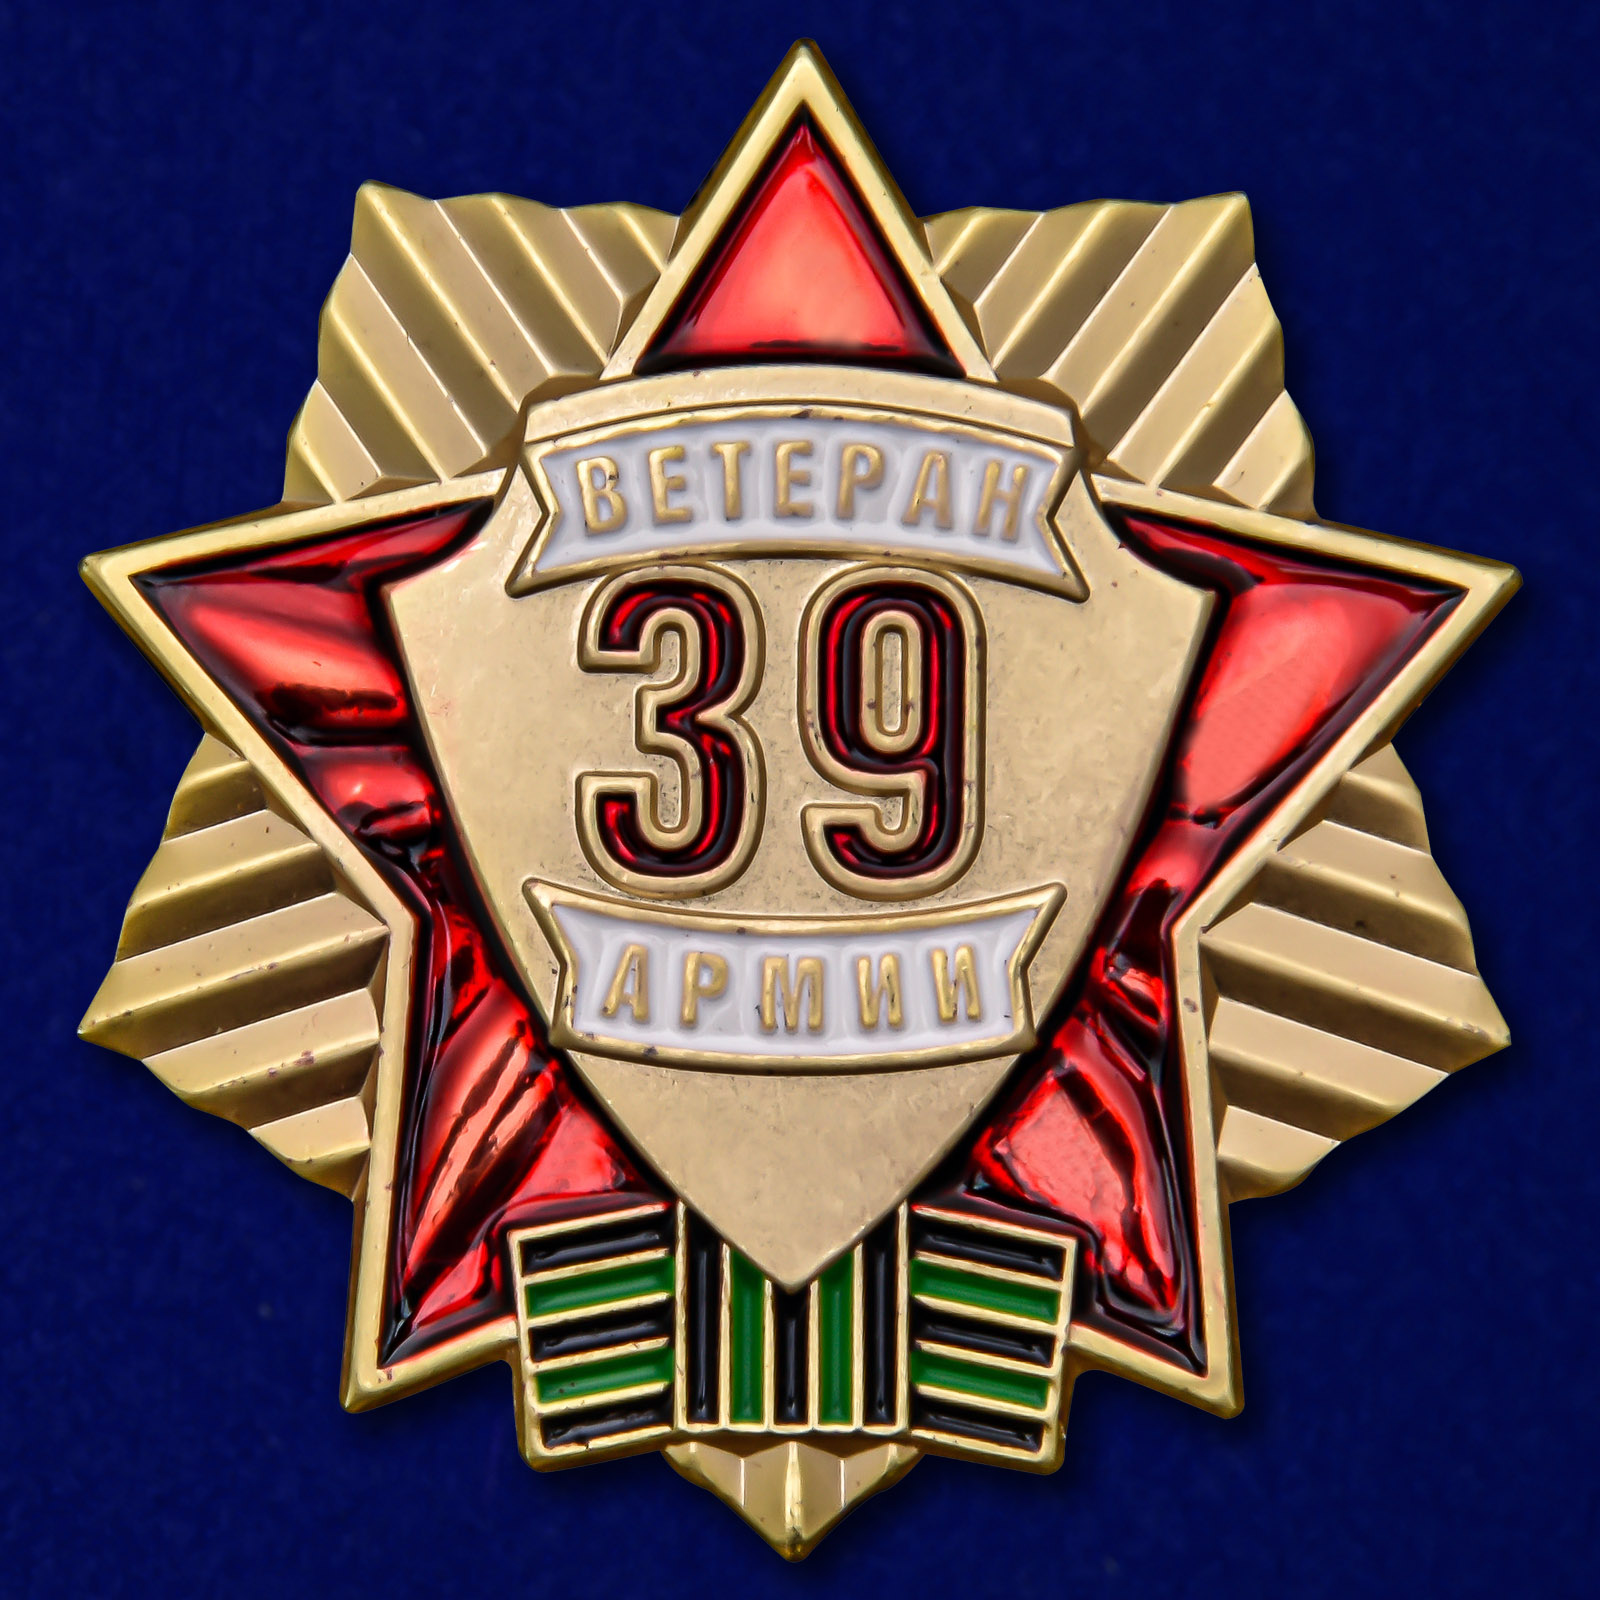 Памятный знак "Ветеран 39 Армии" 